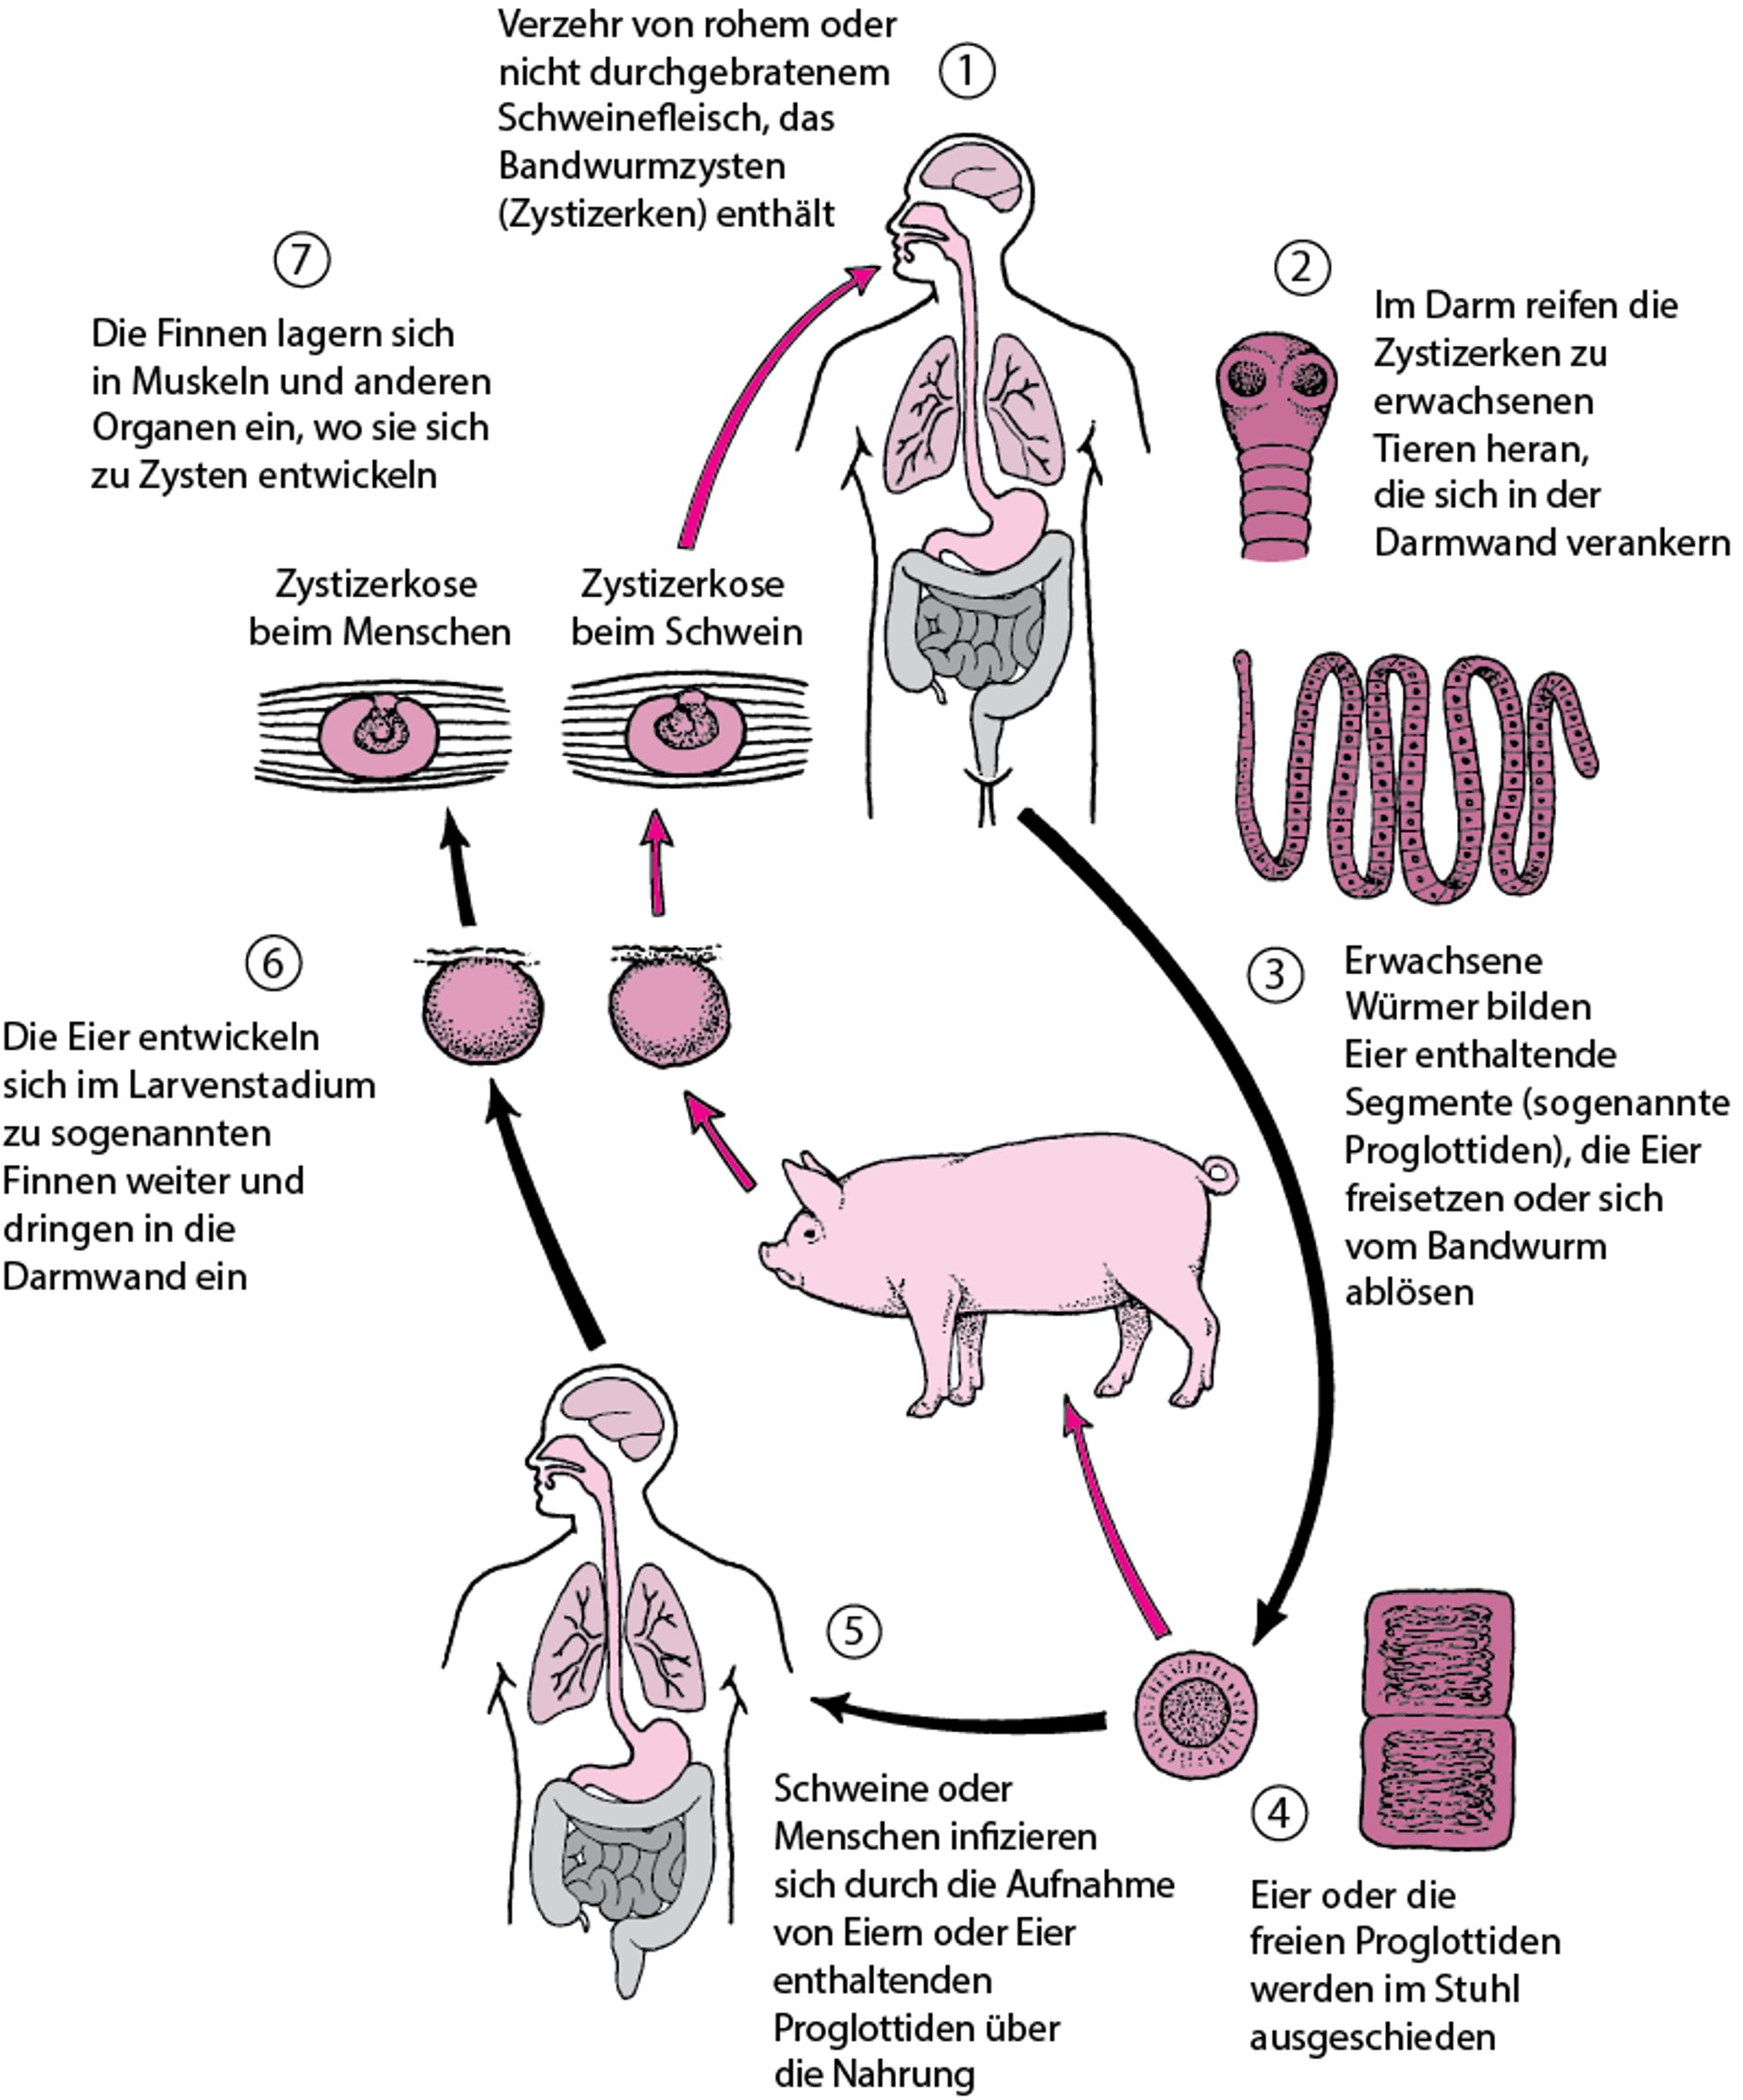 Lebenszyklus des Schweinebandwurms